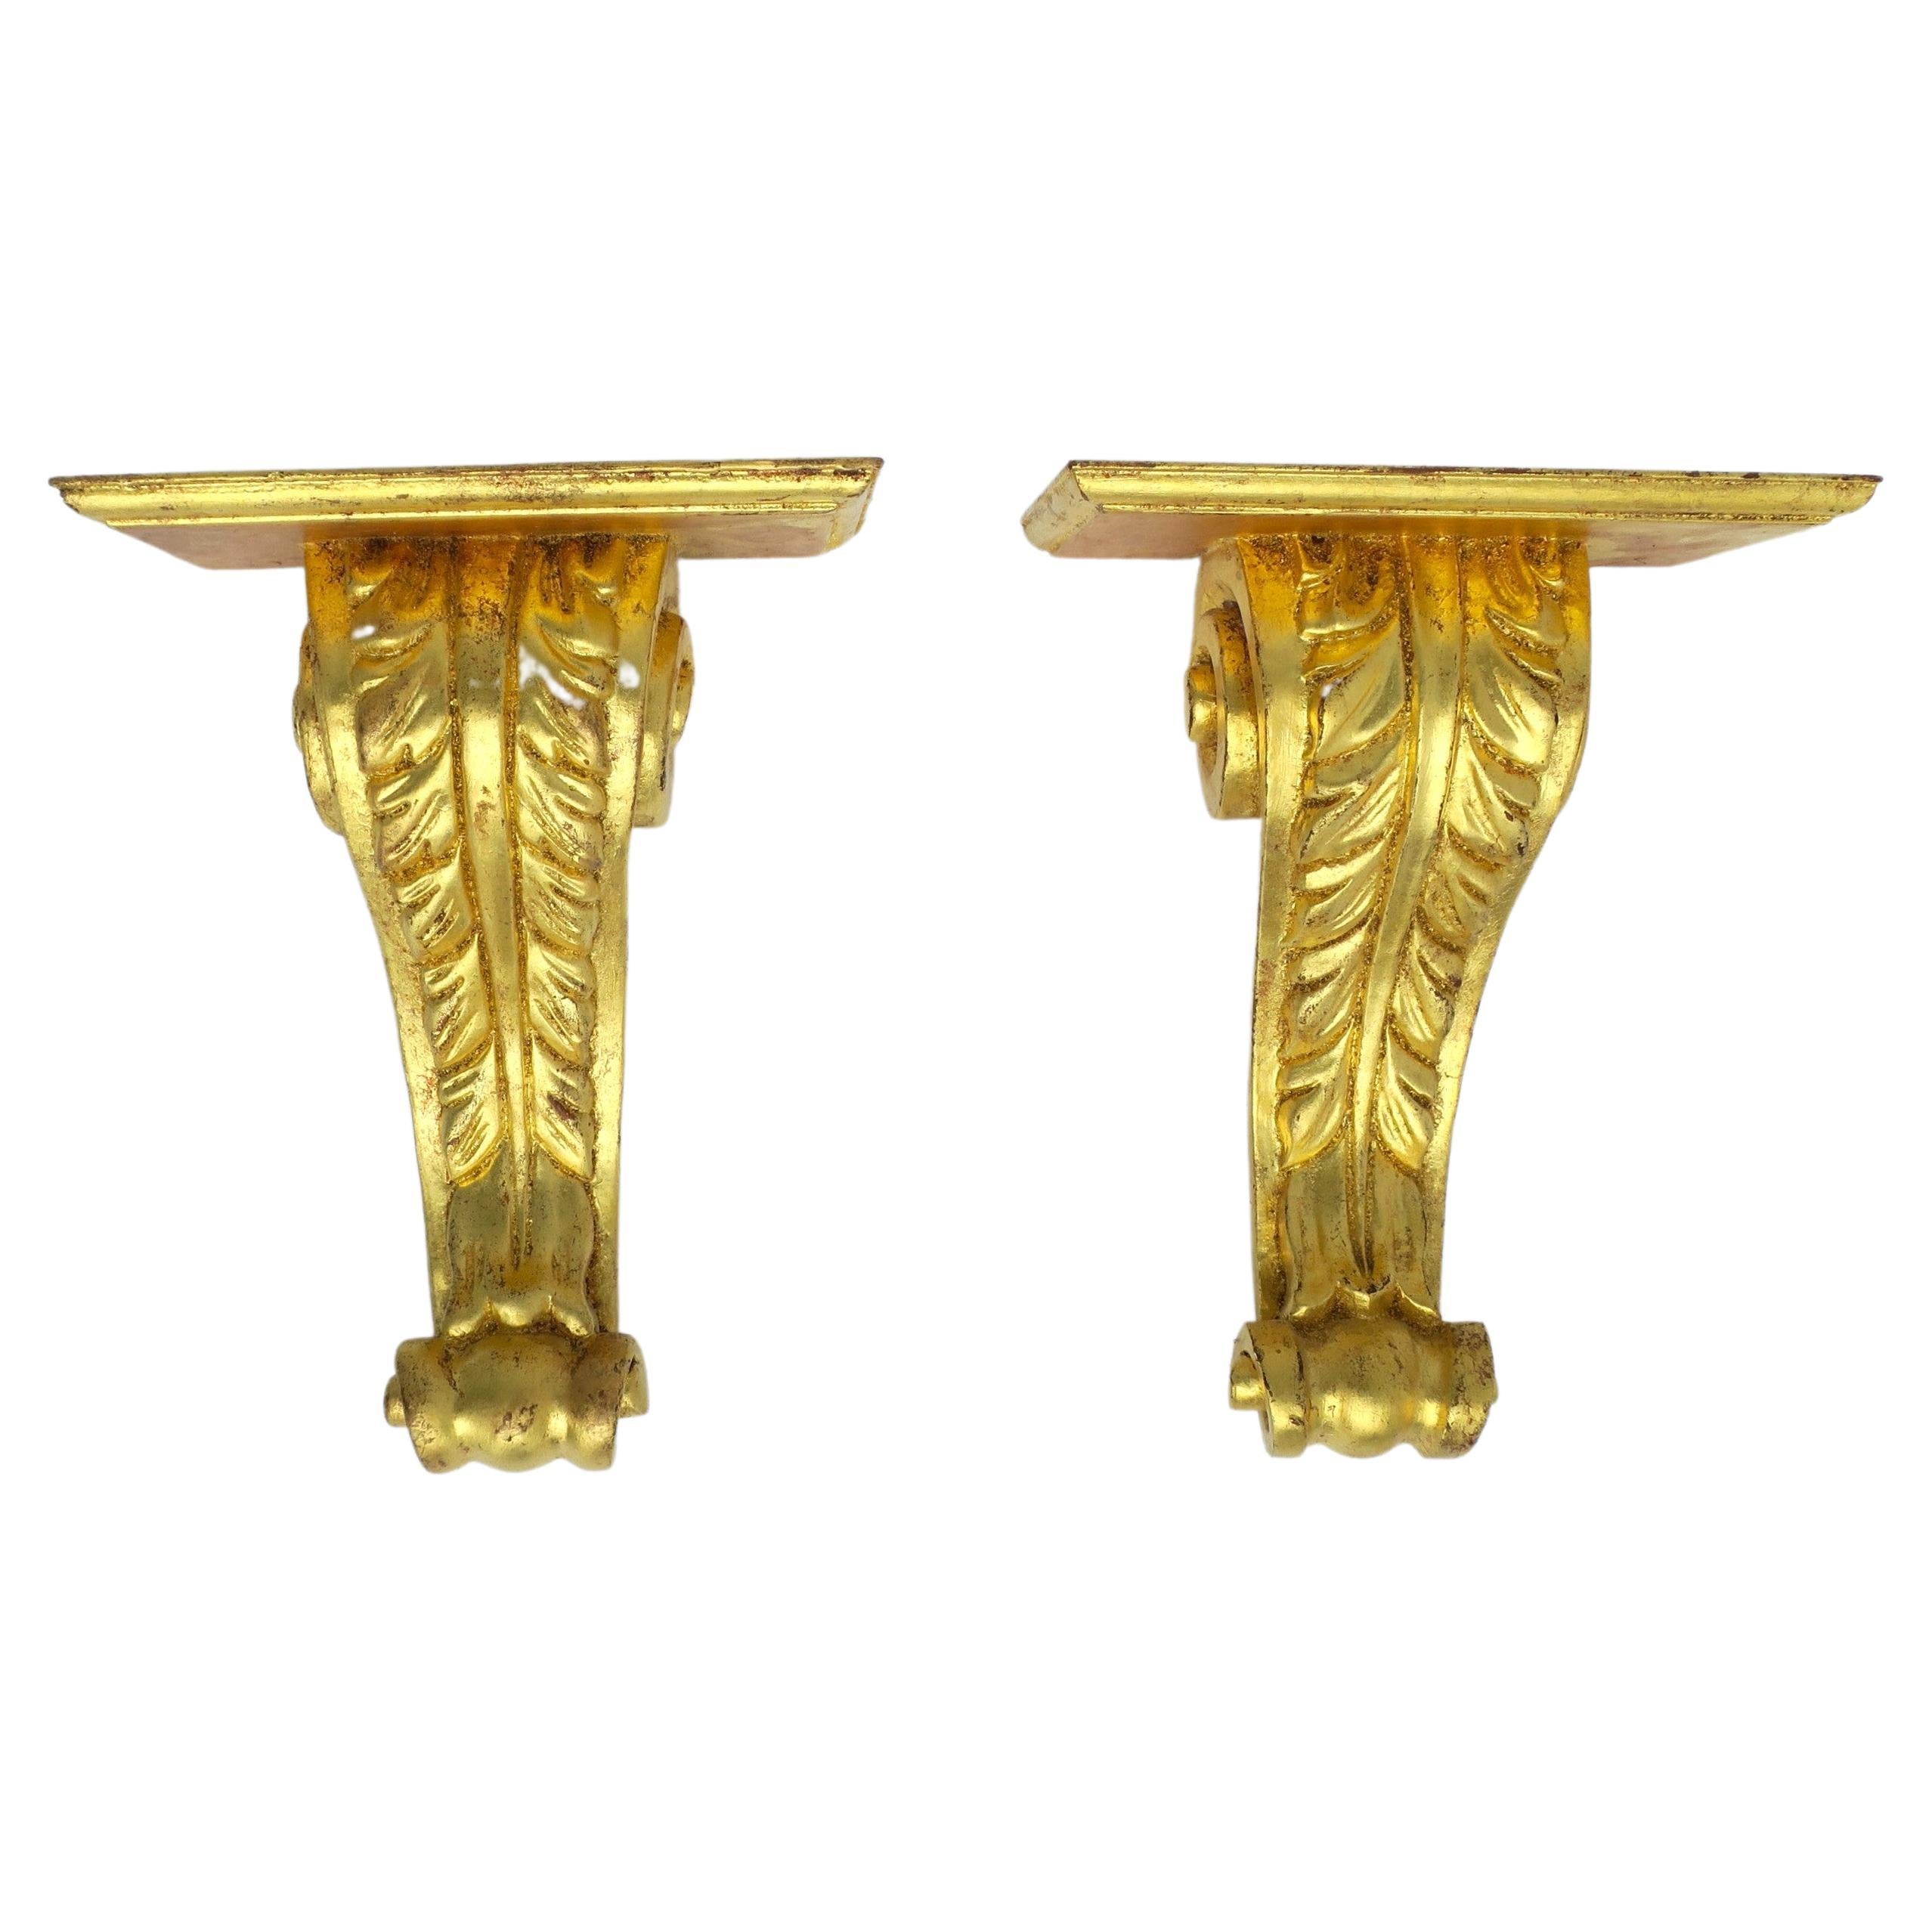 Italienische Gold vergoldet Giltwood Wandregale Acanthus Blatt Design, Paar